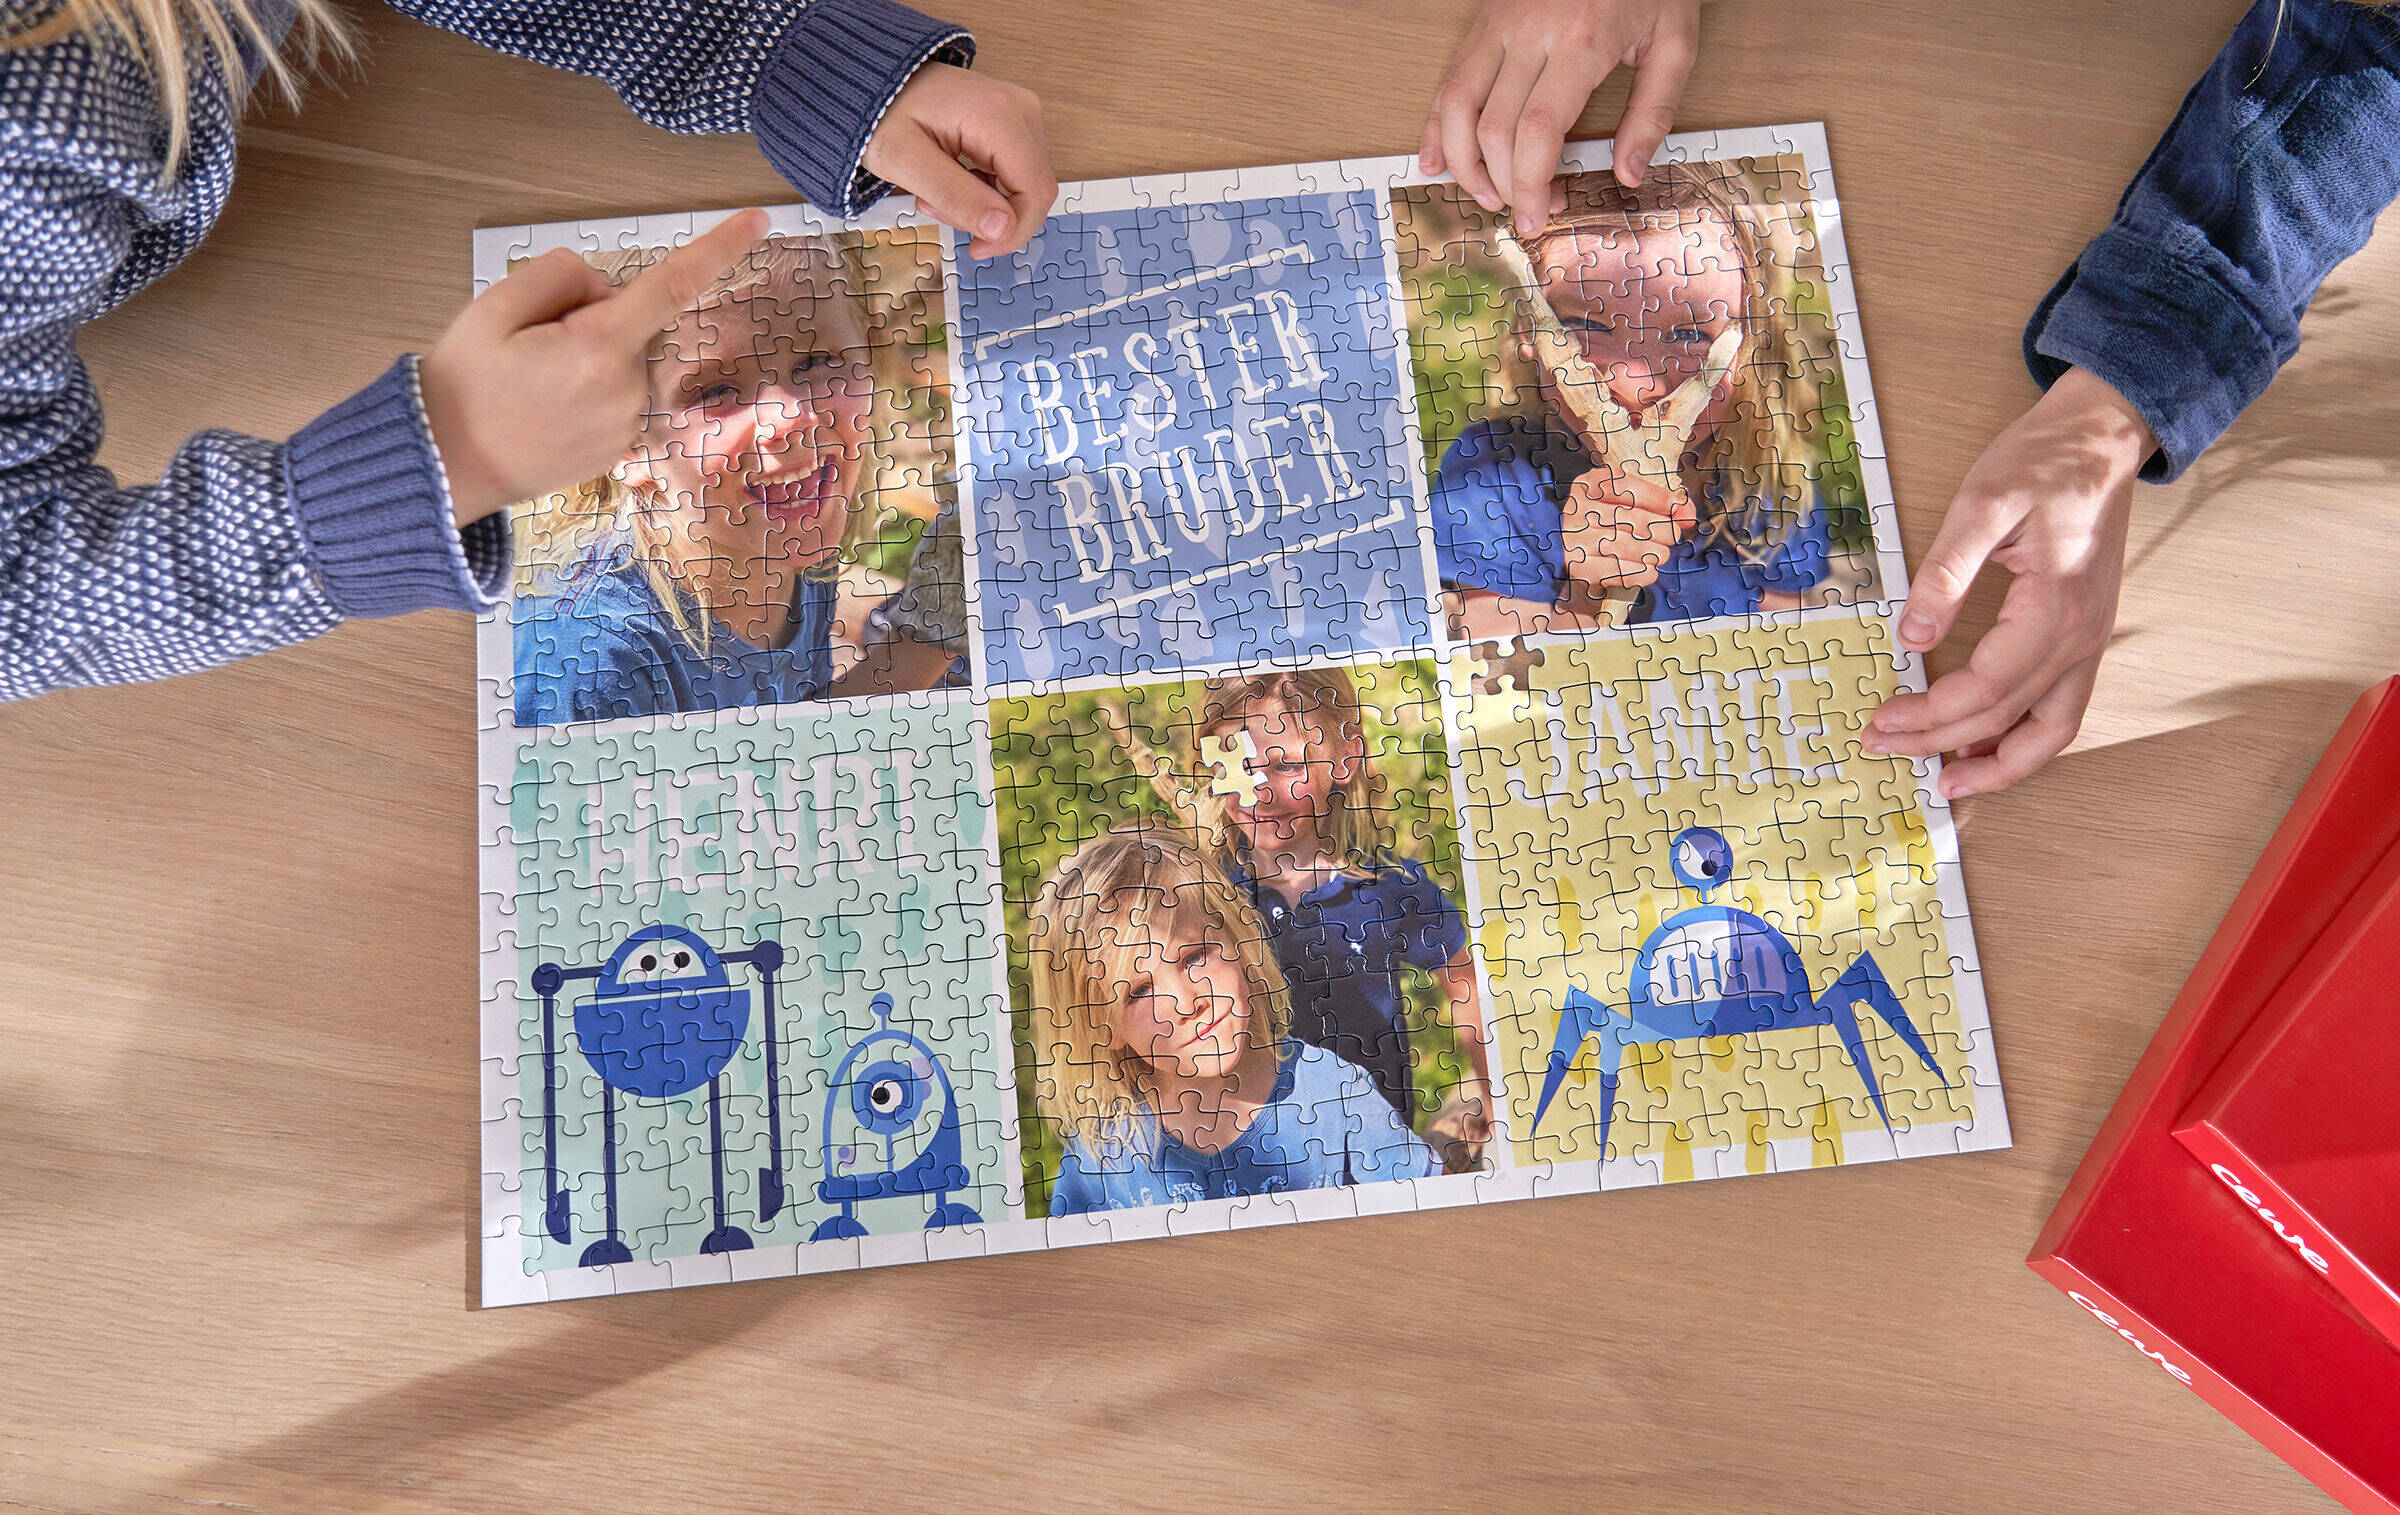 Fotopuzzle mit drei Fotos von Kindern und drei gestalteten Kacheln mit Monster-Cliparts und Schrift.